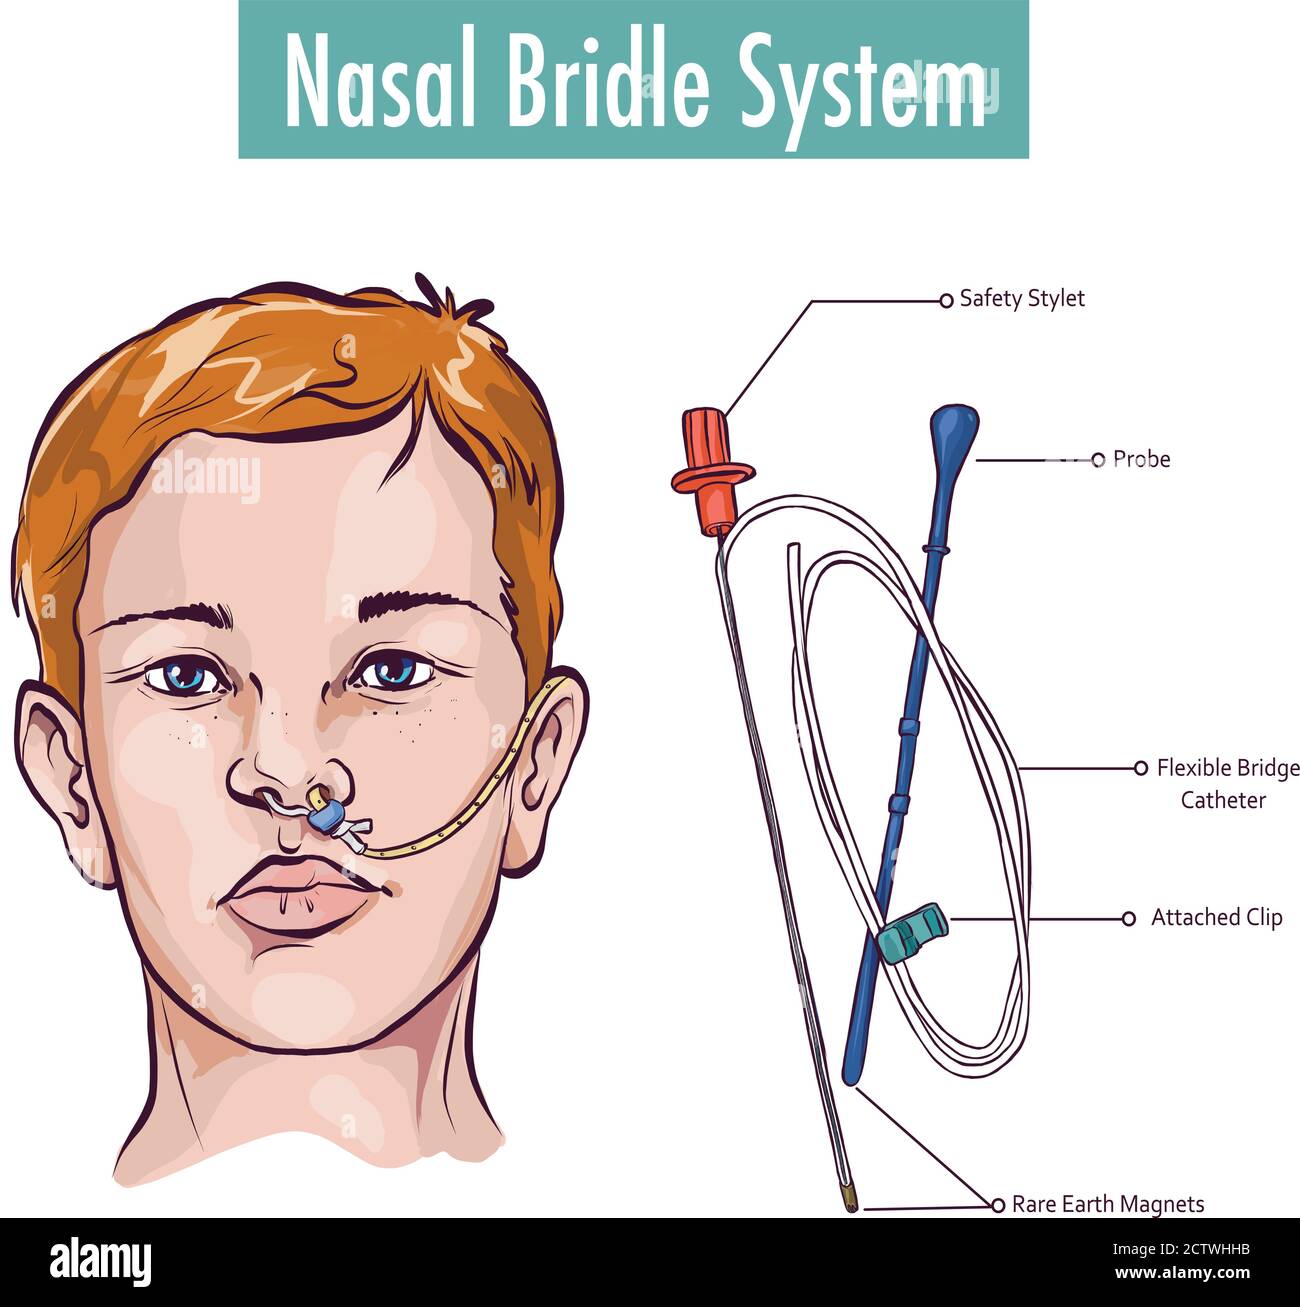 Una briglia nasale che fissa un tubo nasogastrico al nasale setto per evitare l'estrazione accidentale Illustrazione Vettoriale